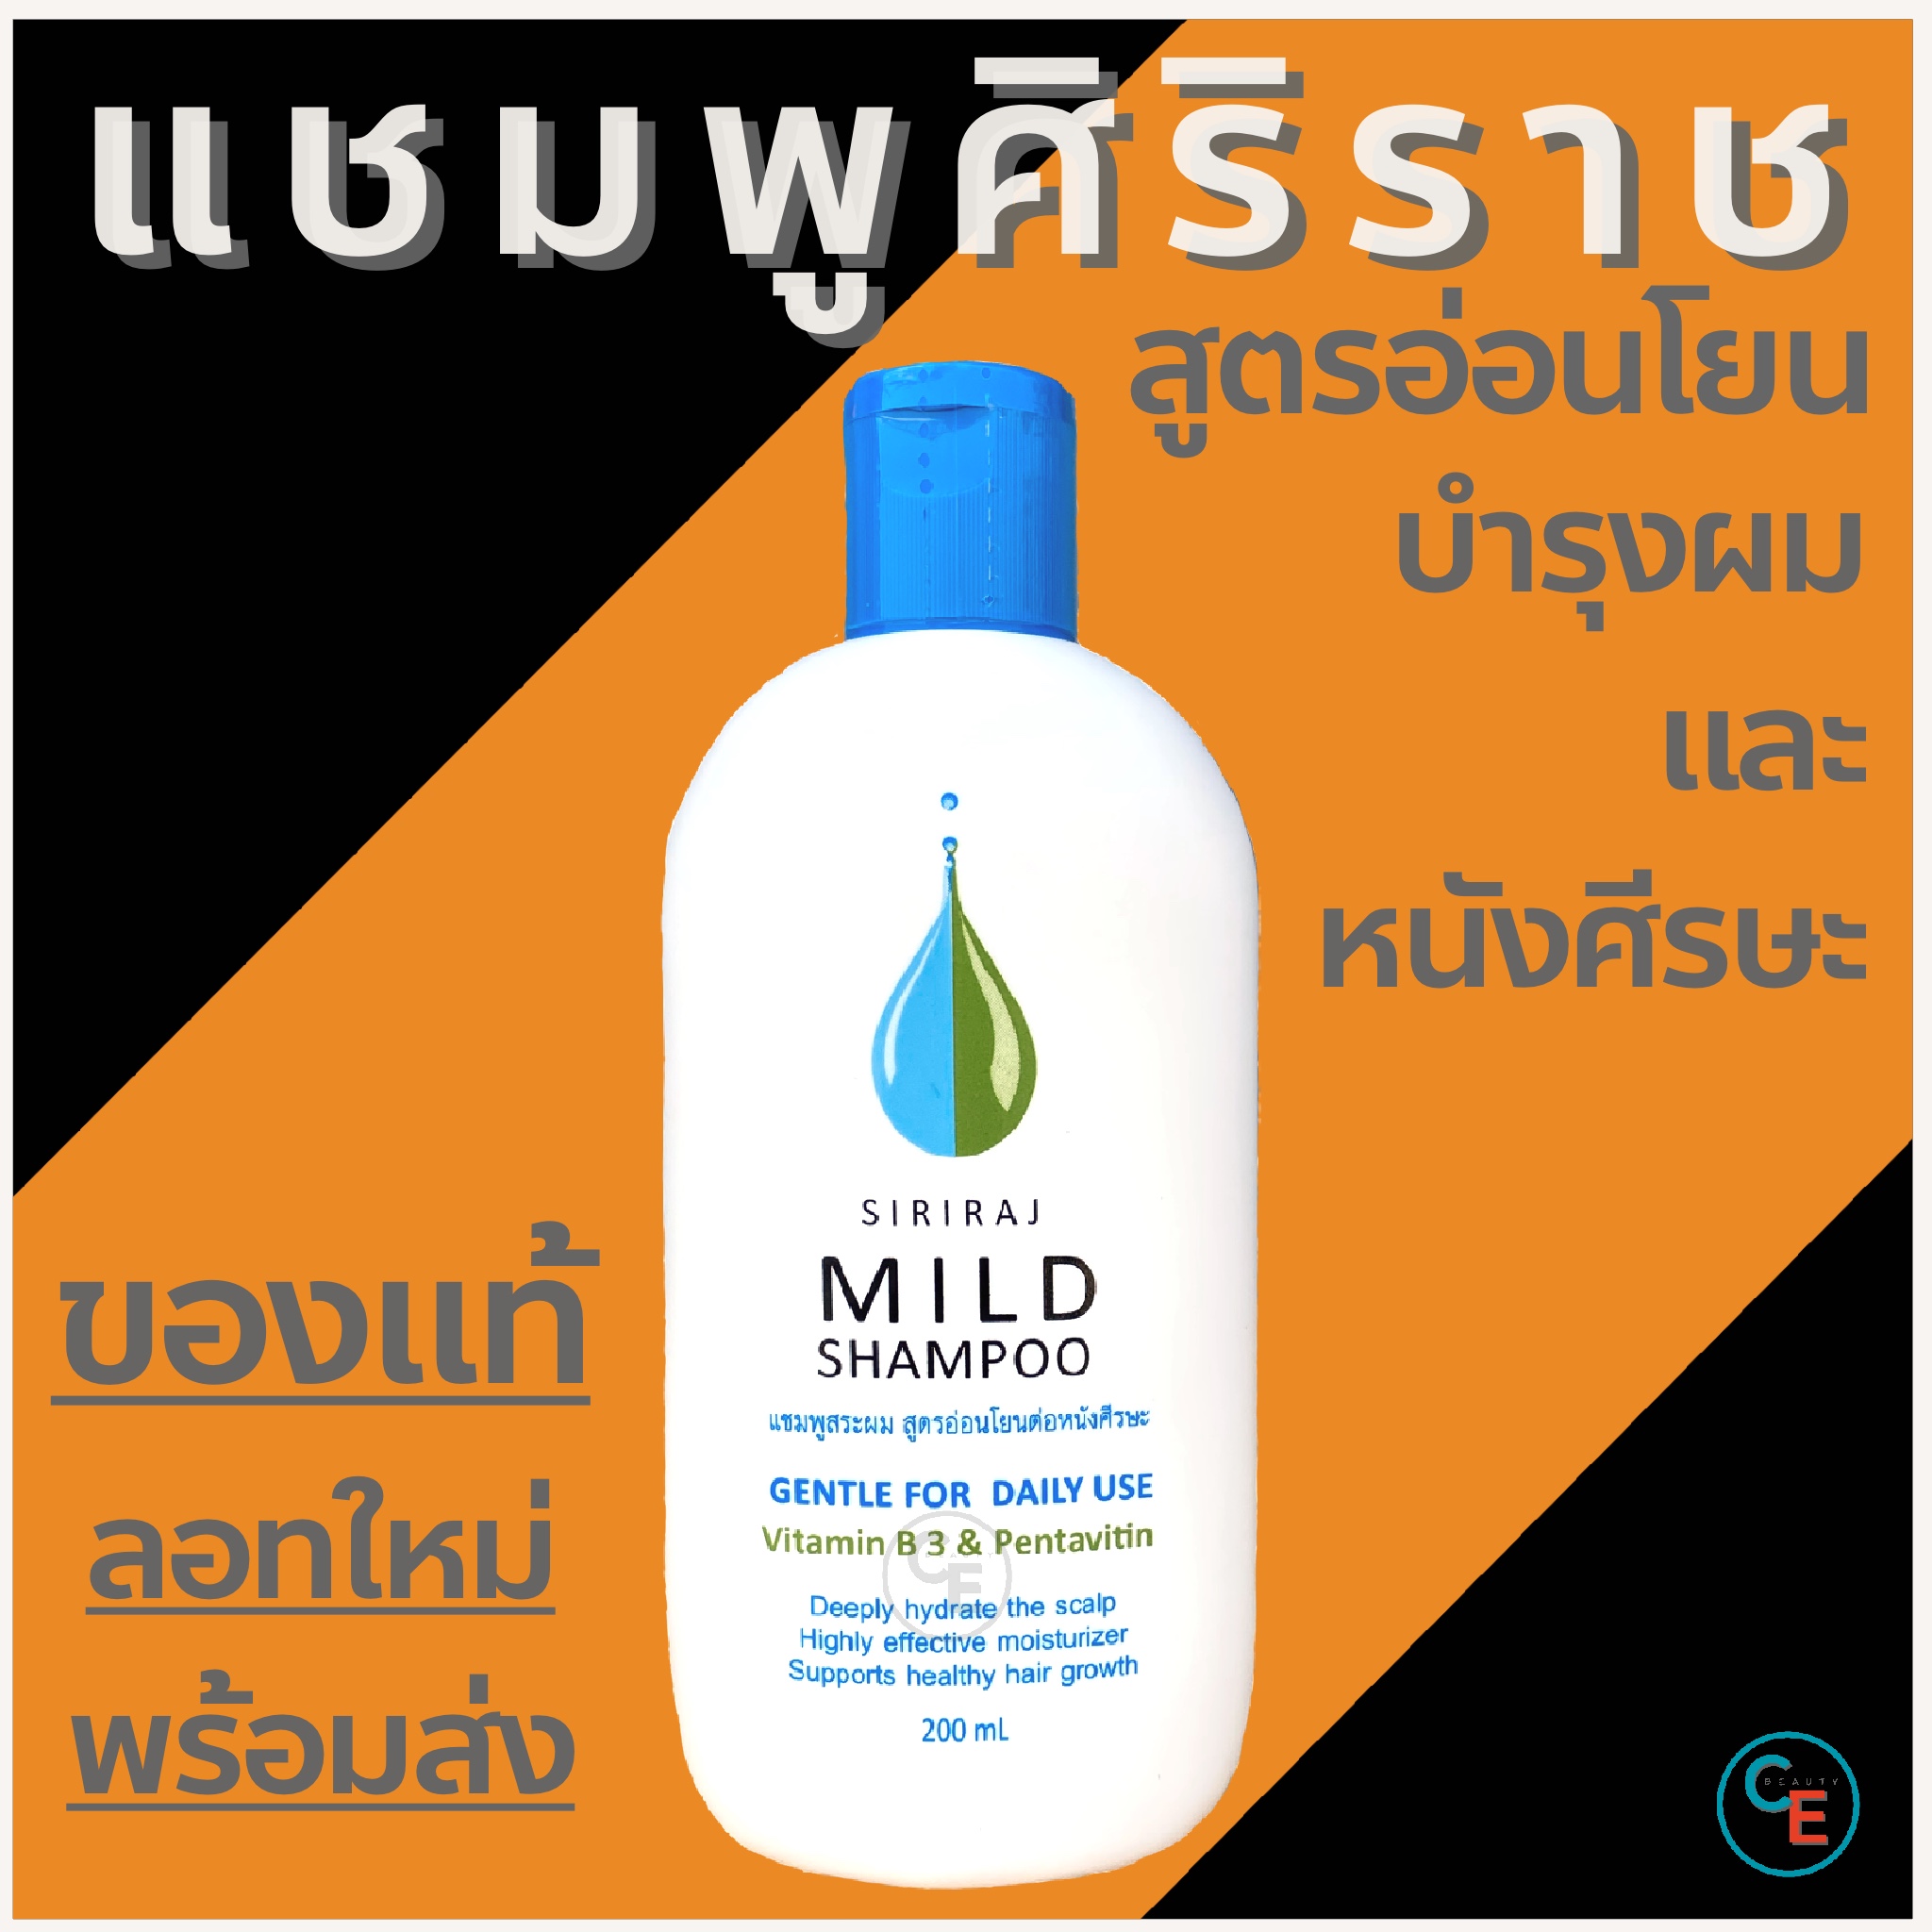 Mild shampoo (1ขวด) แชมพูศิริราช สูตรอ่อนโยน มายด์แชมพู ยาสระผม ถนอมหนังศีรษะ